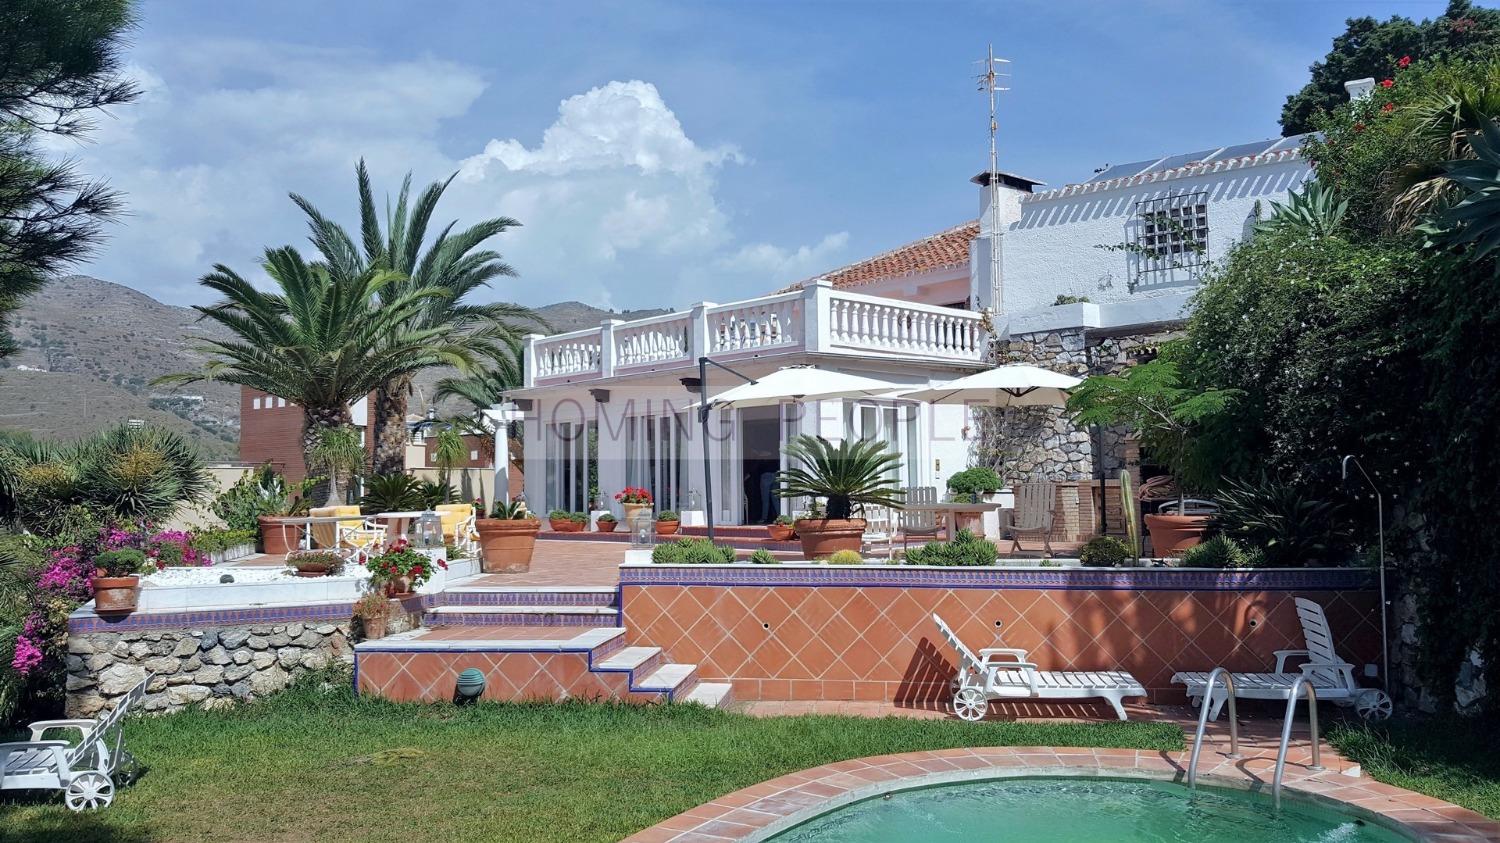 ALQUILADO_Chalet con piscina con dormitorios de invitados en planta superior; situación privilegiada